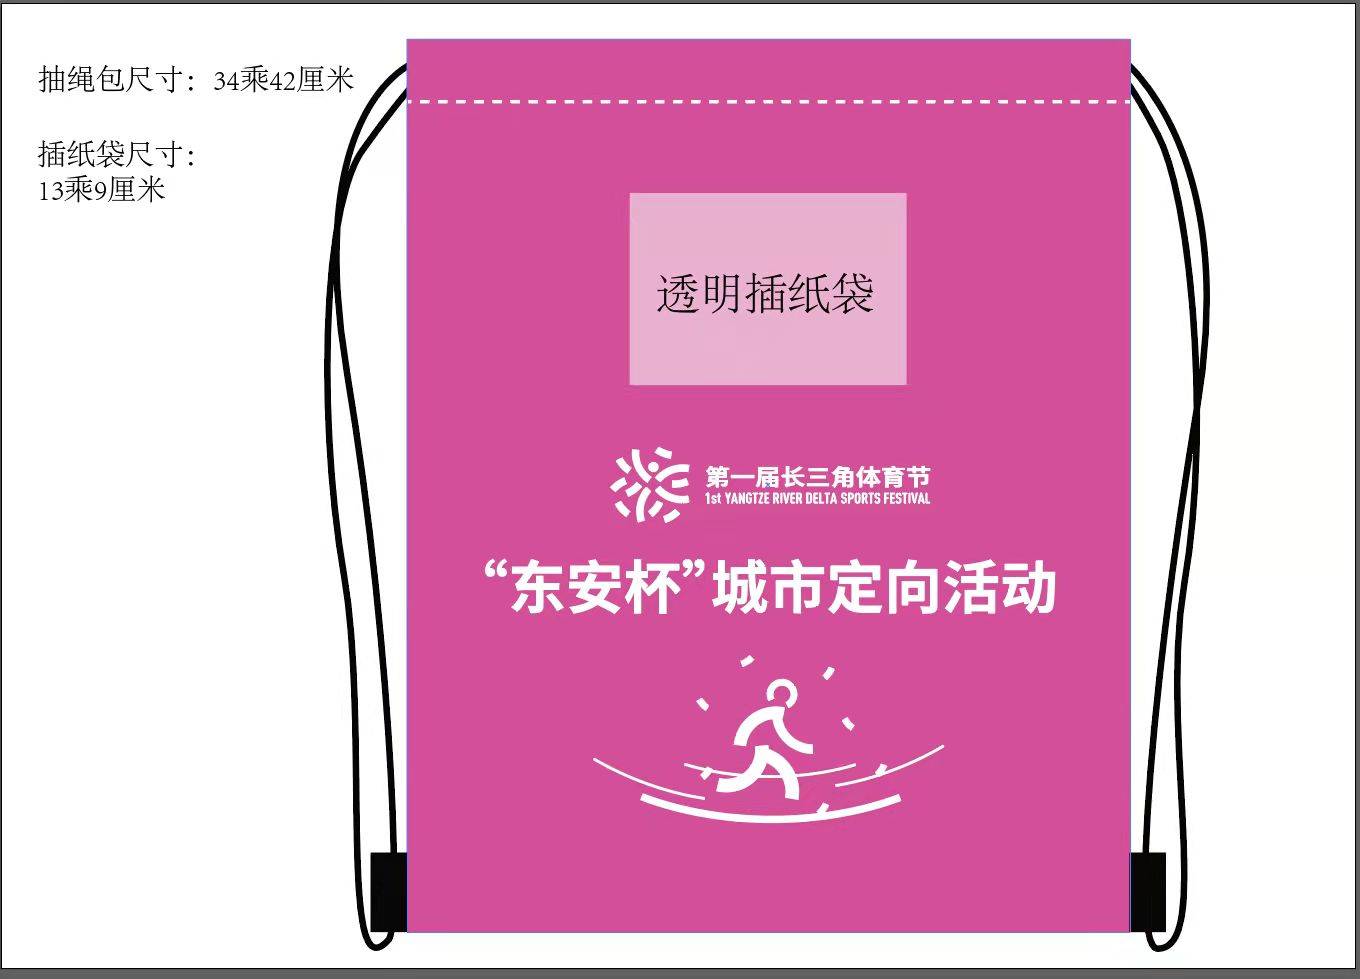 上海海湾森林国家公园 第一届长三角体育节—“东安杯”城市定向活动 稀缺名额 火热报名中！双人票仅售58元！